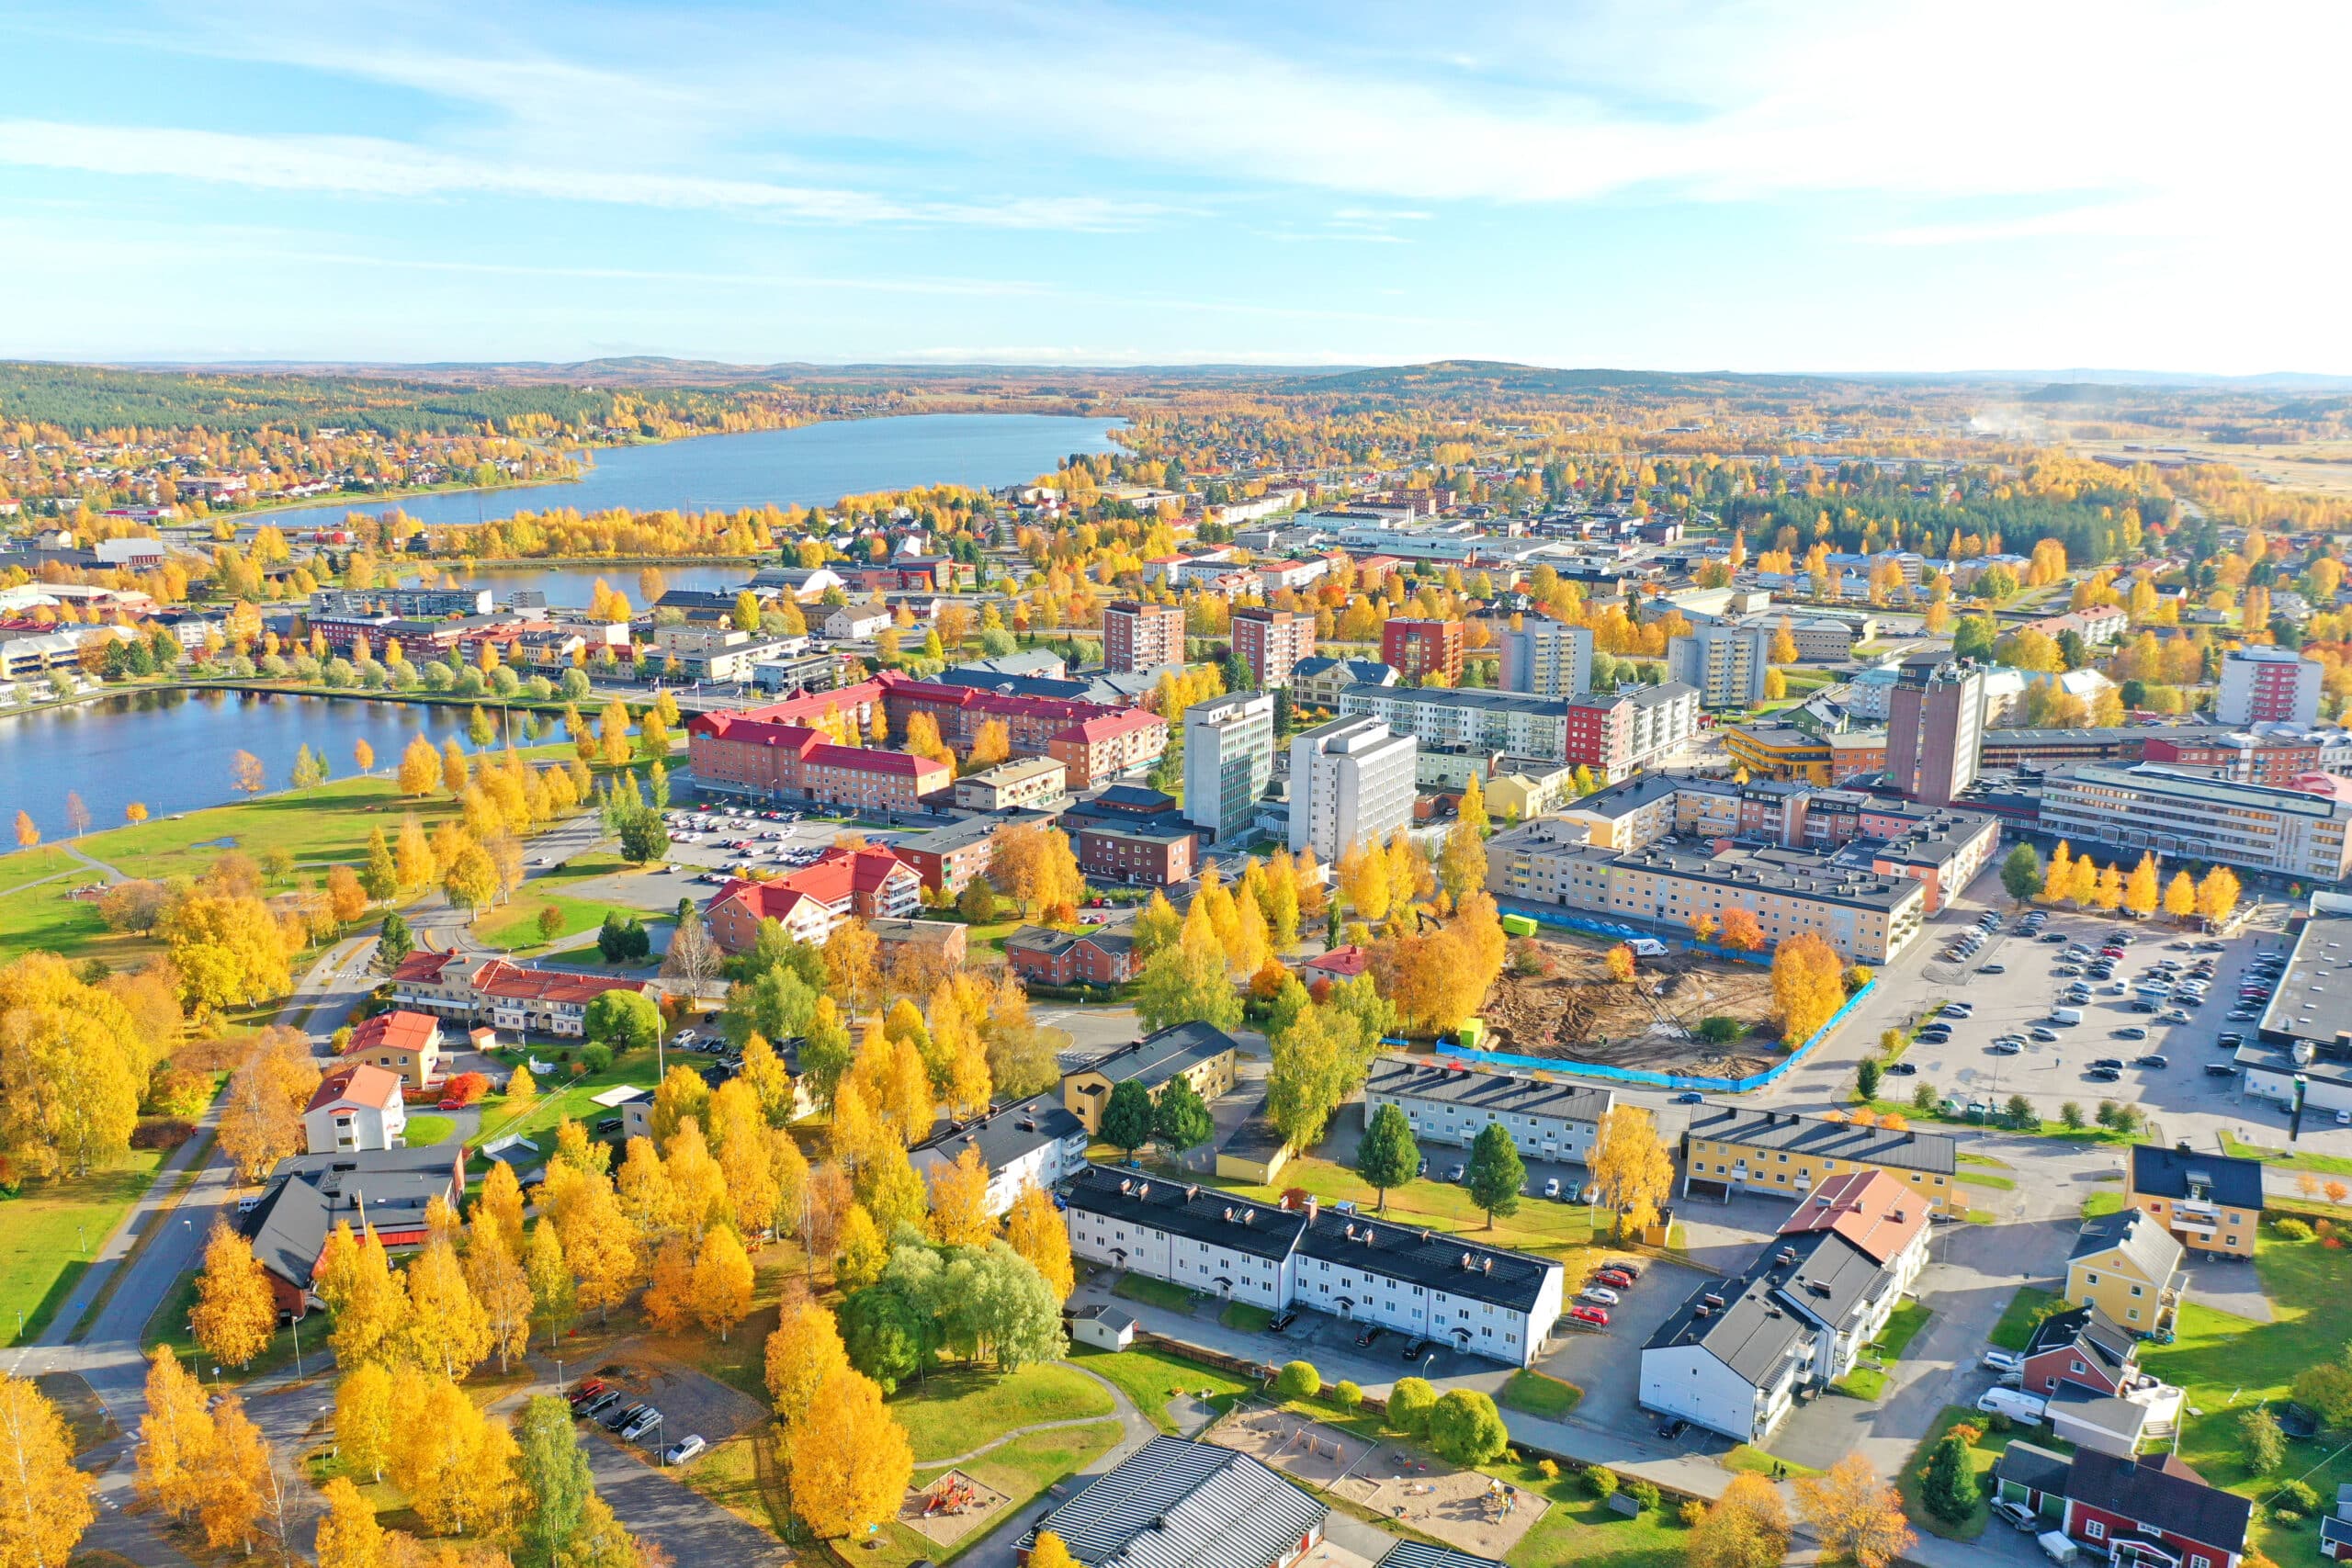 Drönarbild över Boden centrum. Himlen är blå och lövträden har blivit gula. Gräset är grönt och det syns både en sjö och flera byggnader.